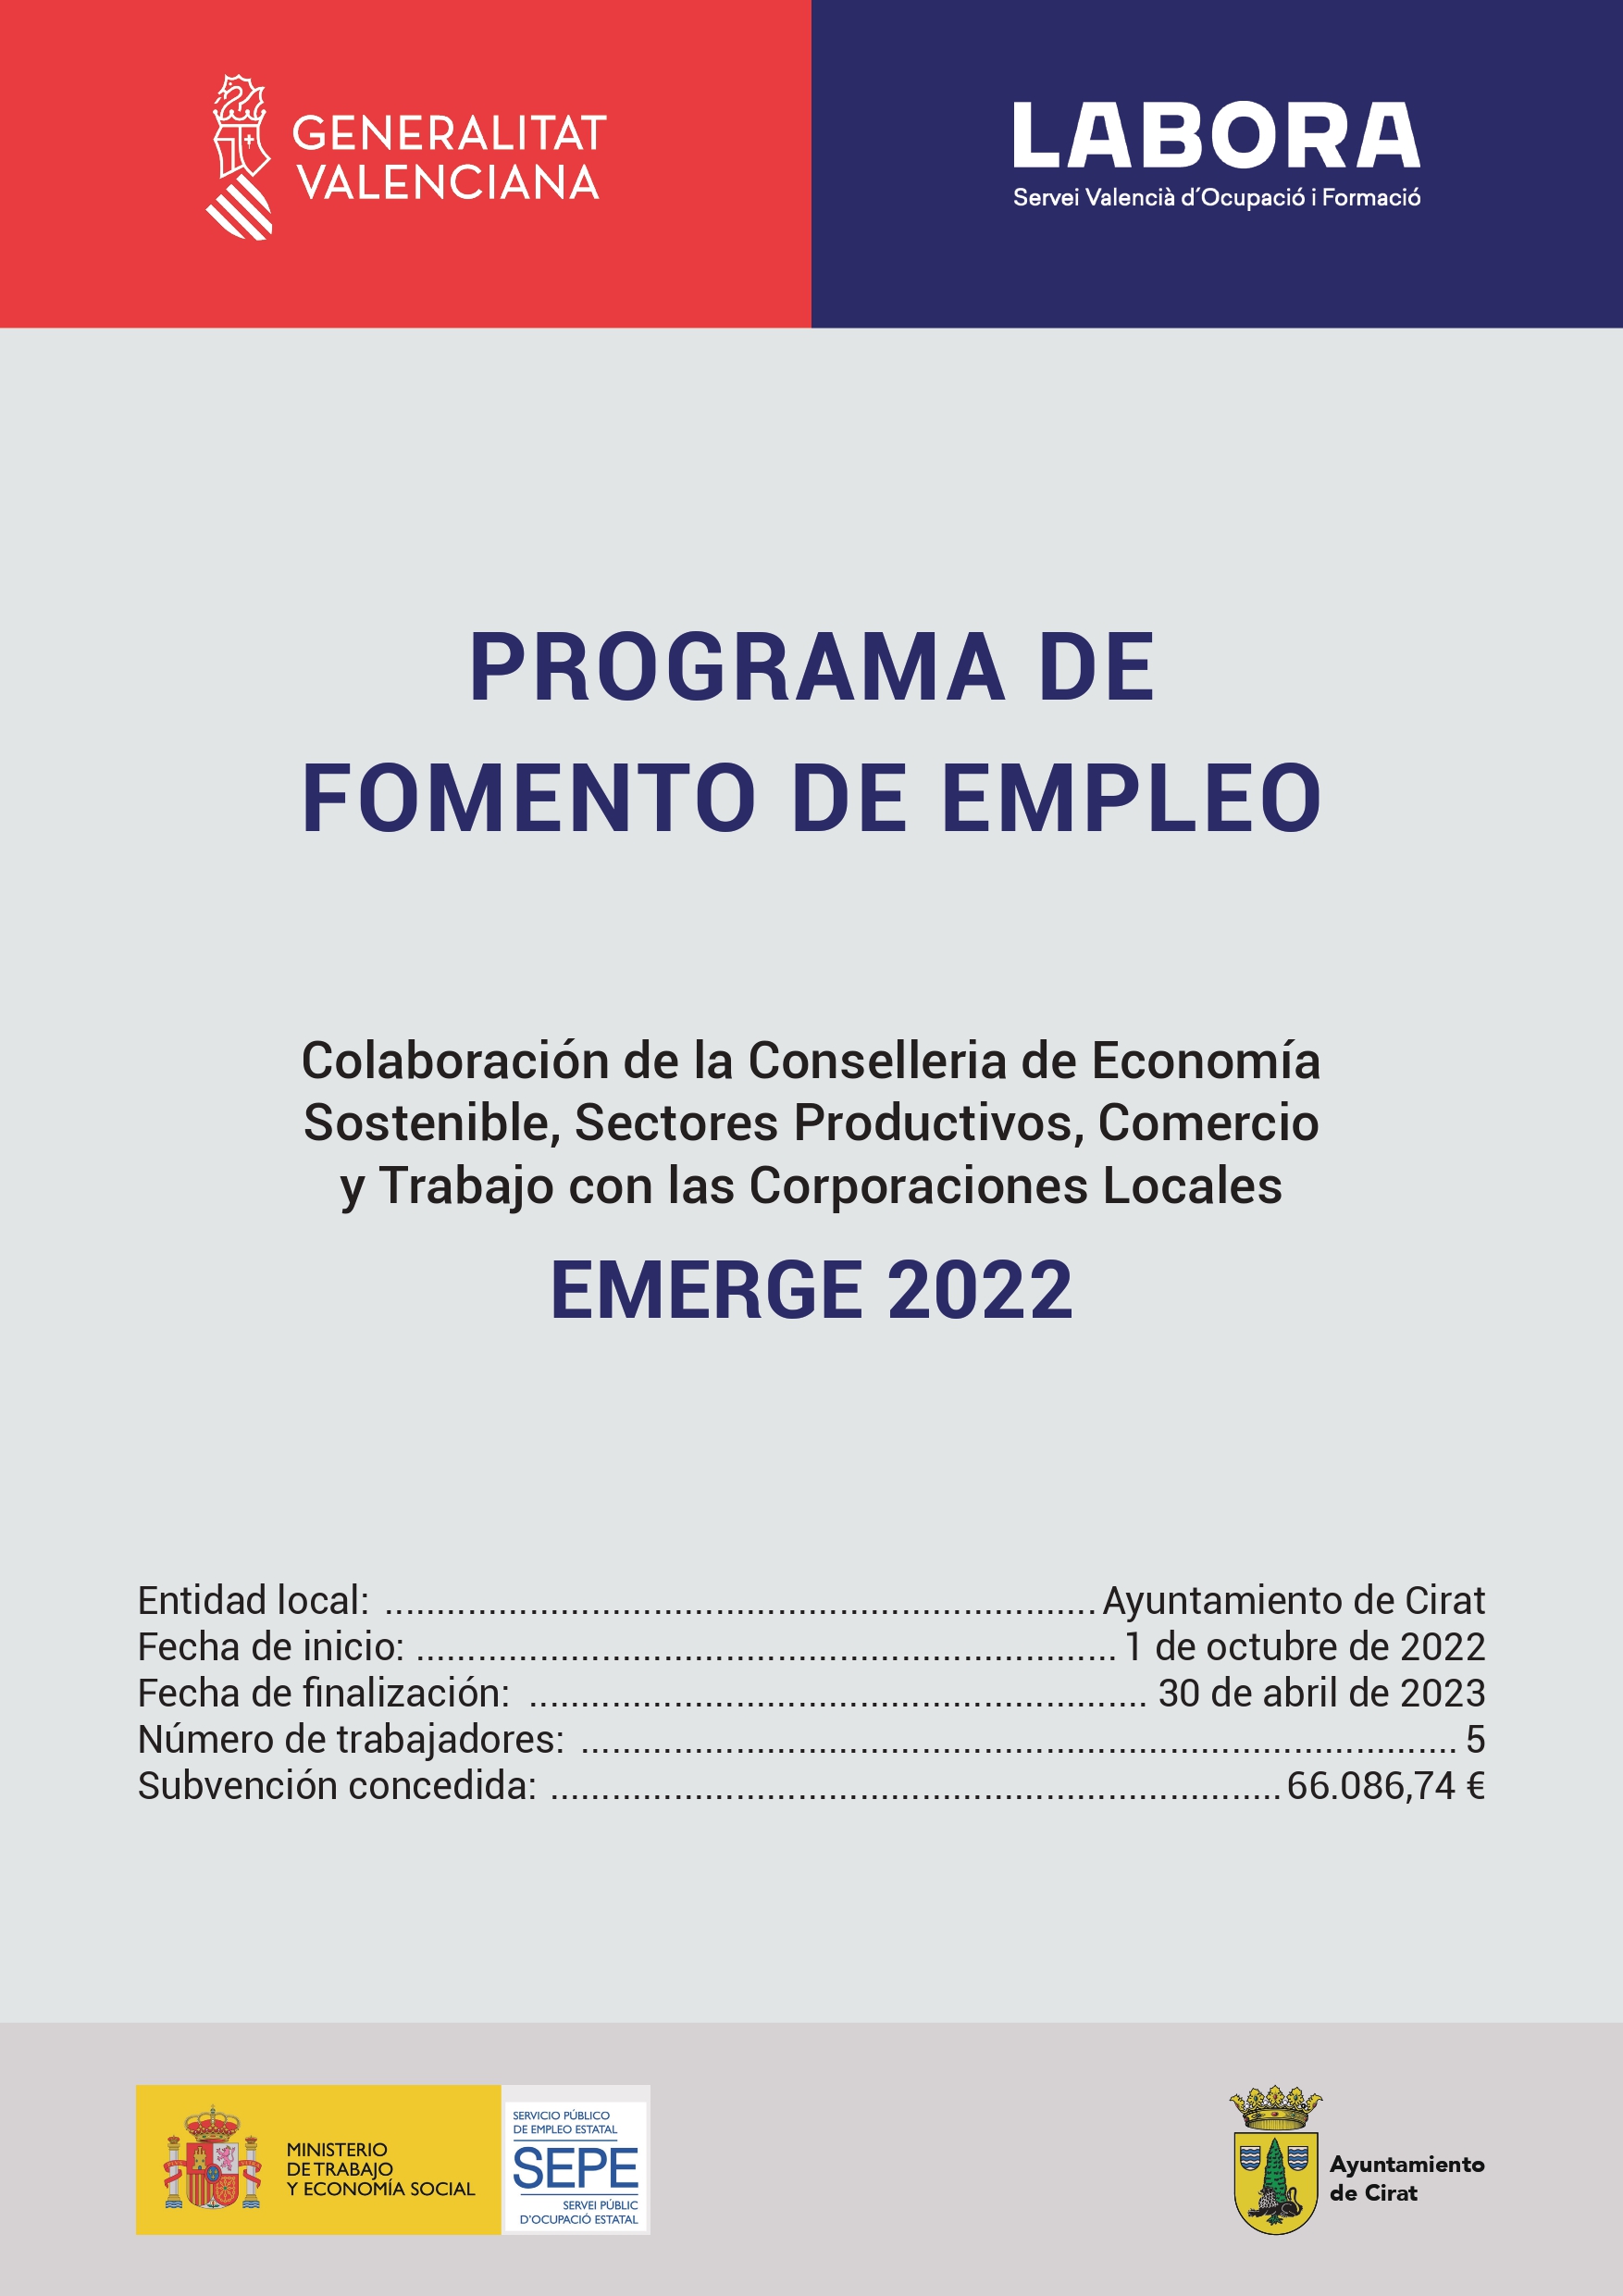 EMERGE 2022